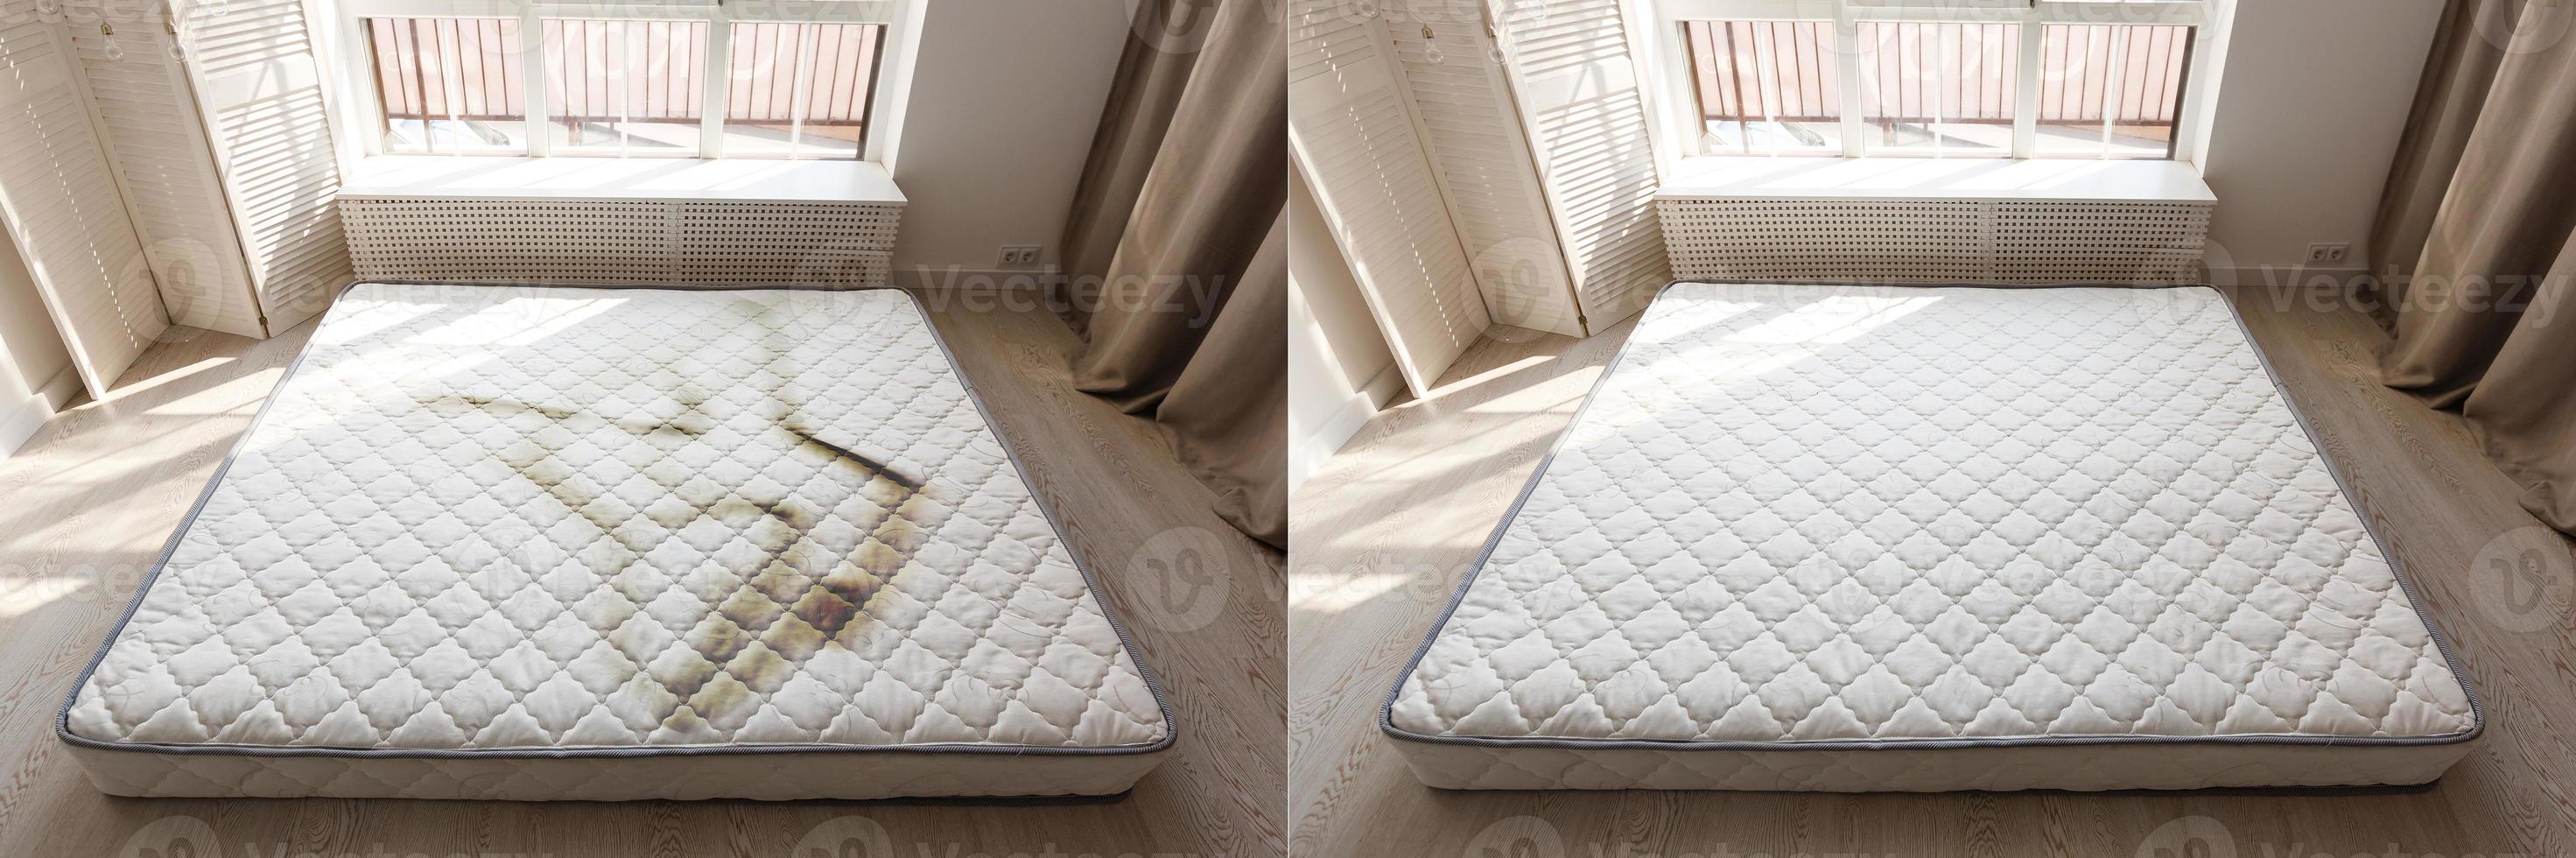 colchón gris en el suelo contra una pantalla de diseño en un amplio dormitorio con una silla gris contra una cortina oscura colchón sucio en un hotel de bajo coste foto